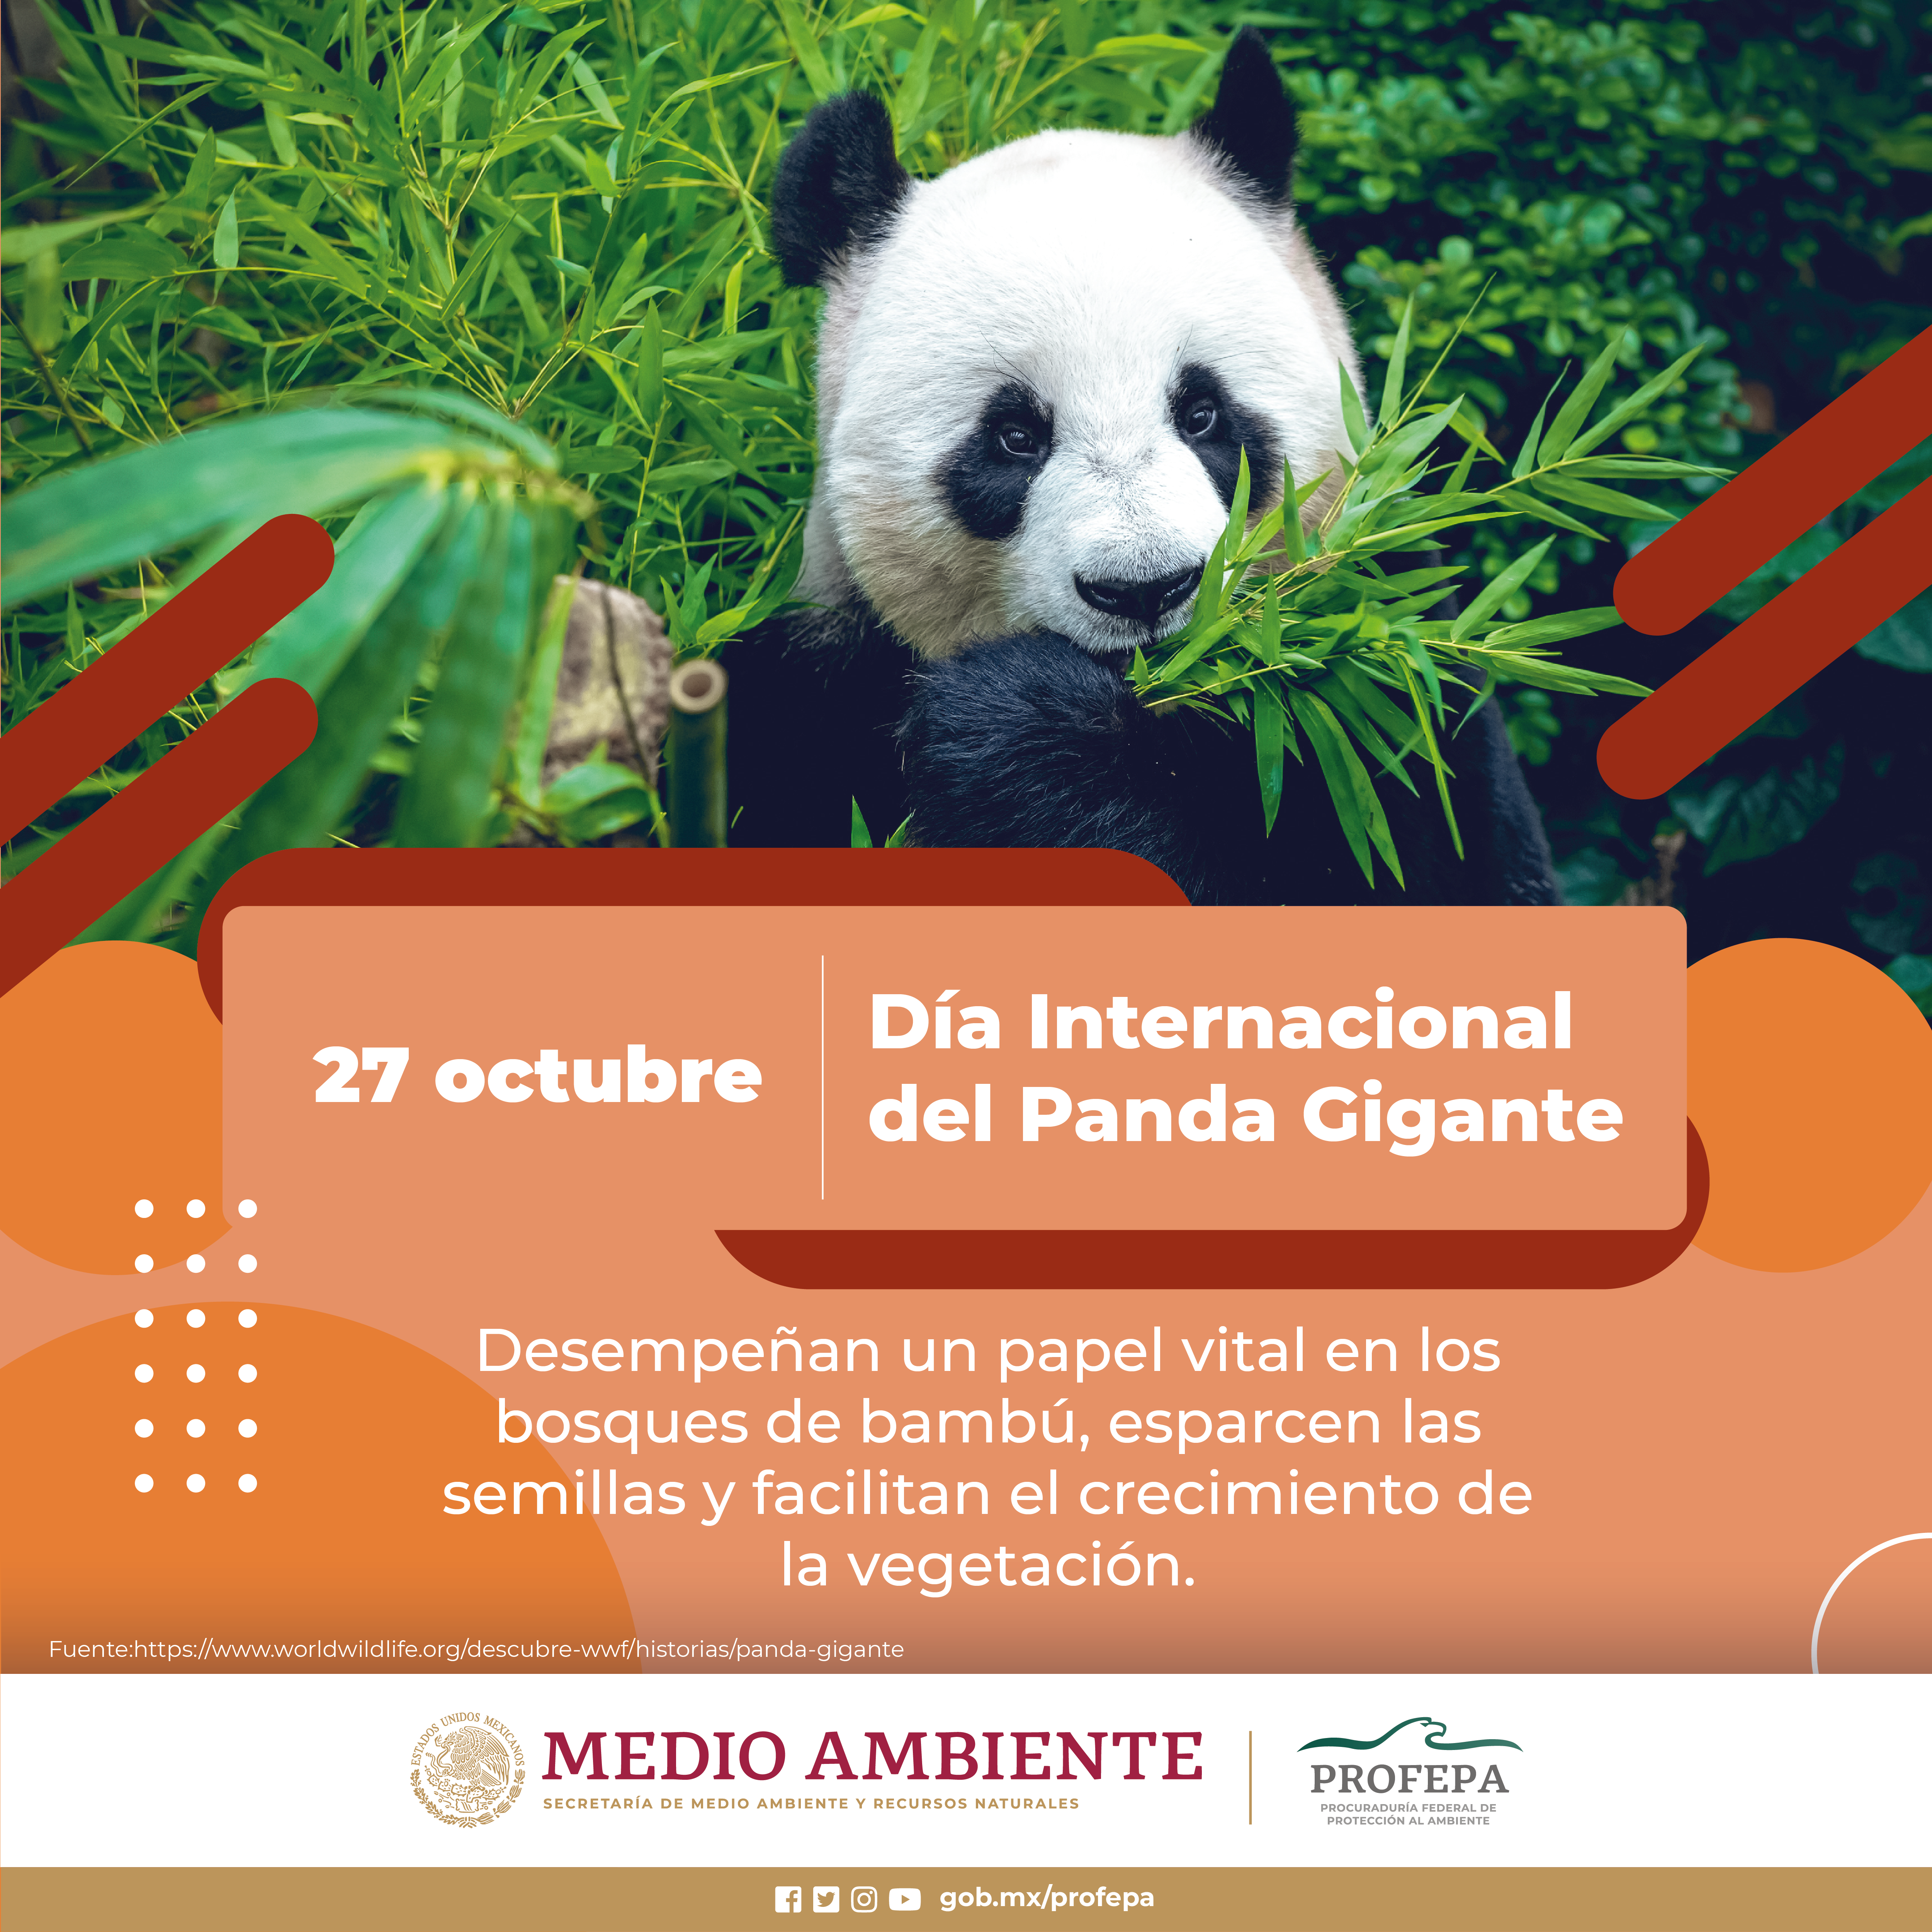 Oso Panda (Ailuropoda melanoleuca) - Dónde vive, características y  alimentación